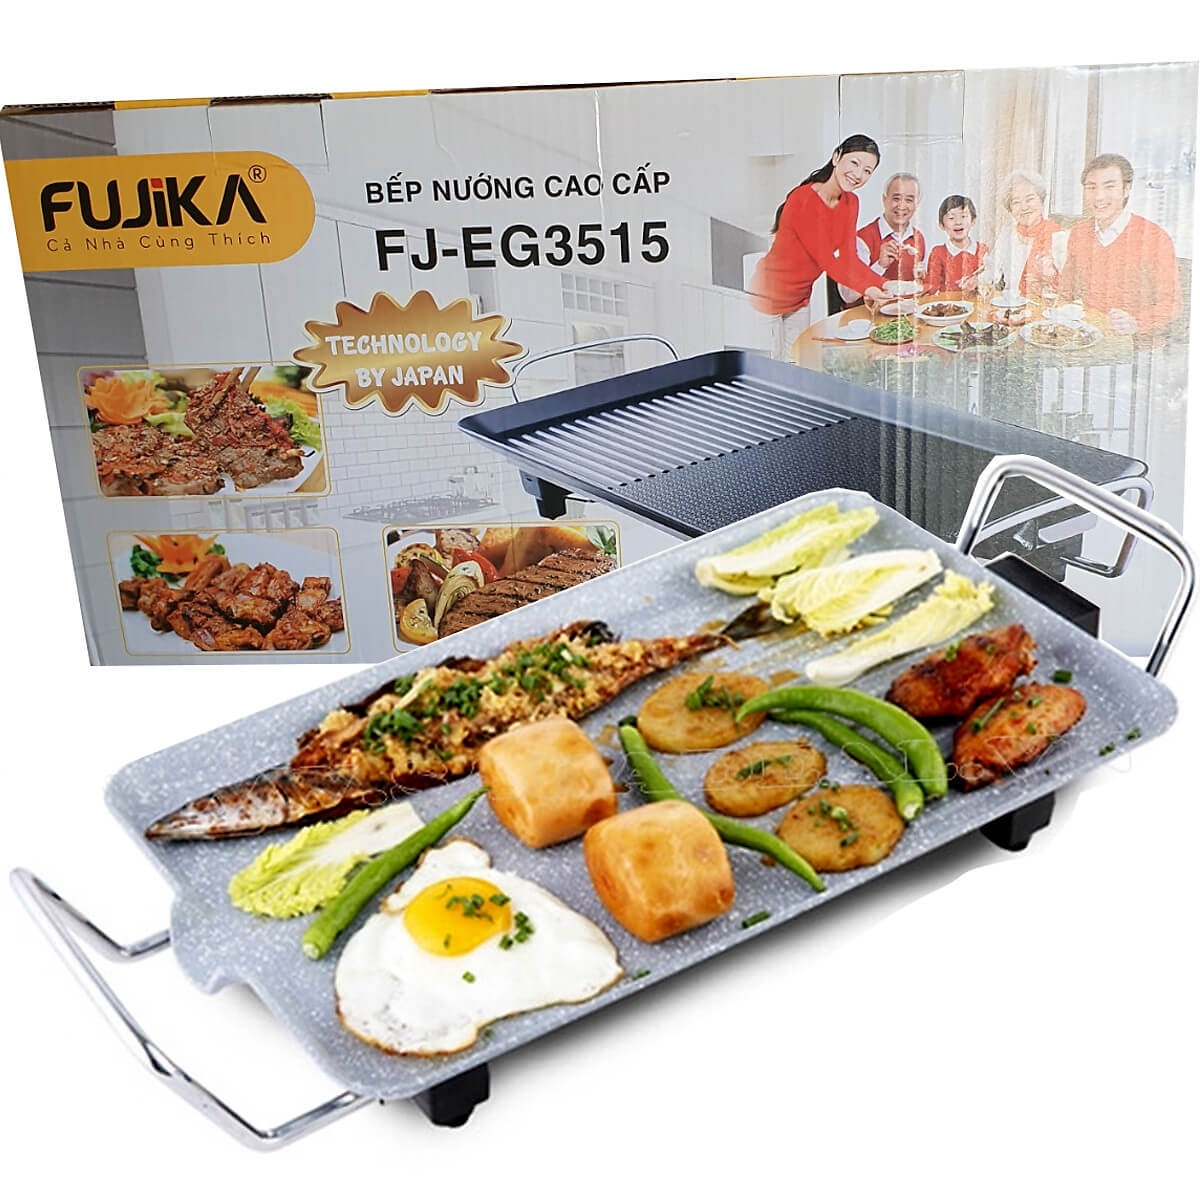 Bếp Nướng Điện Fujika FJ-EG3515